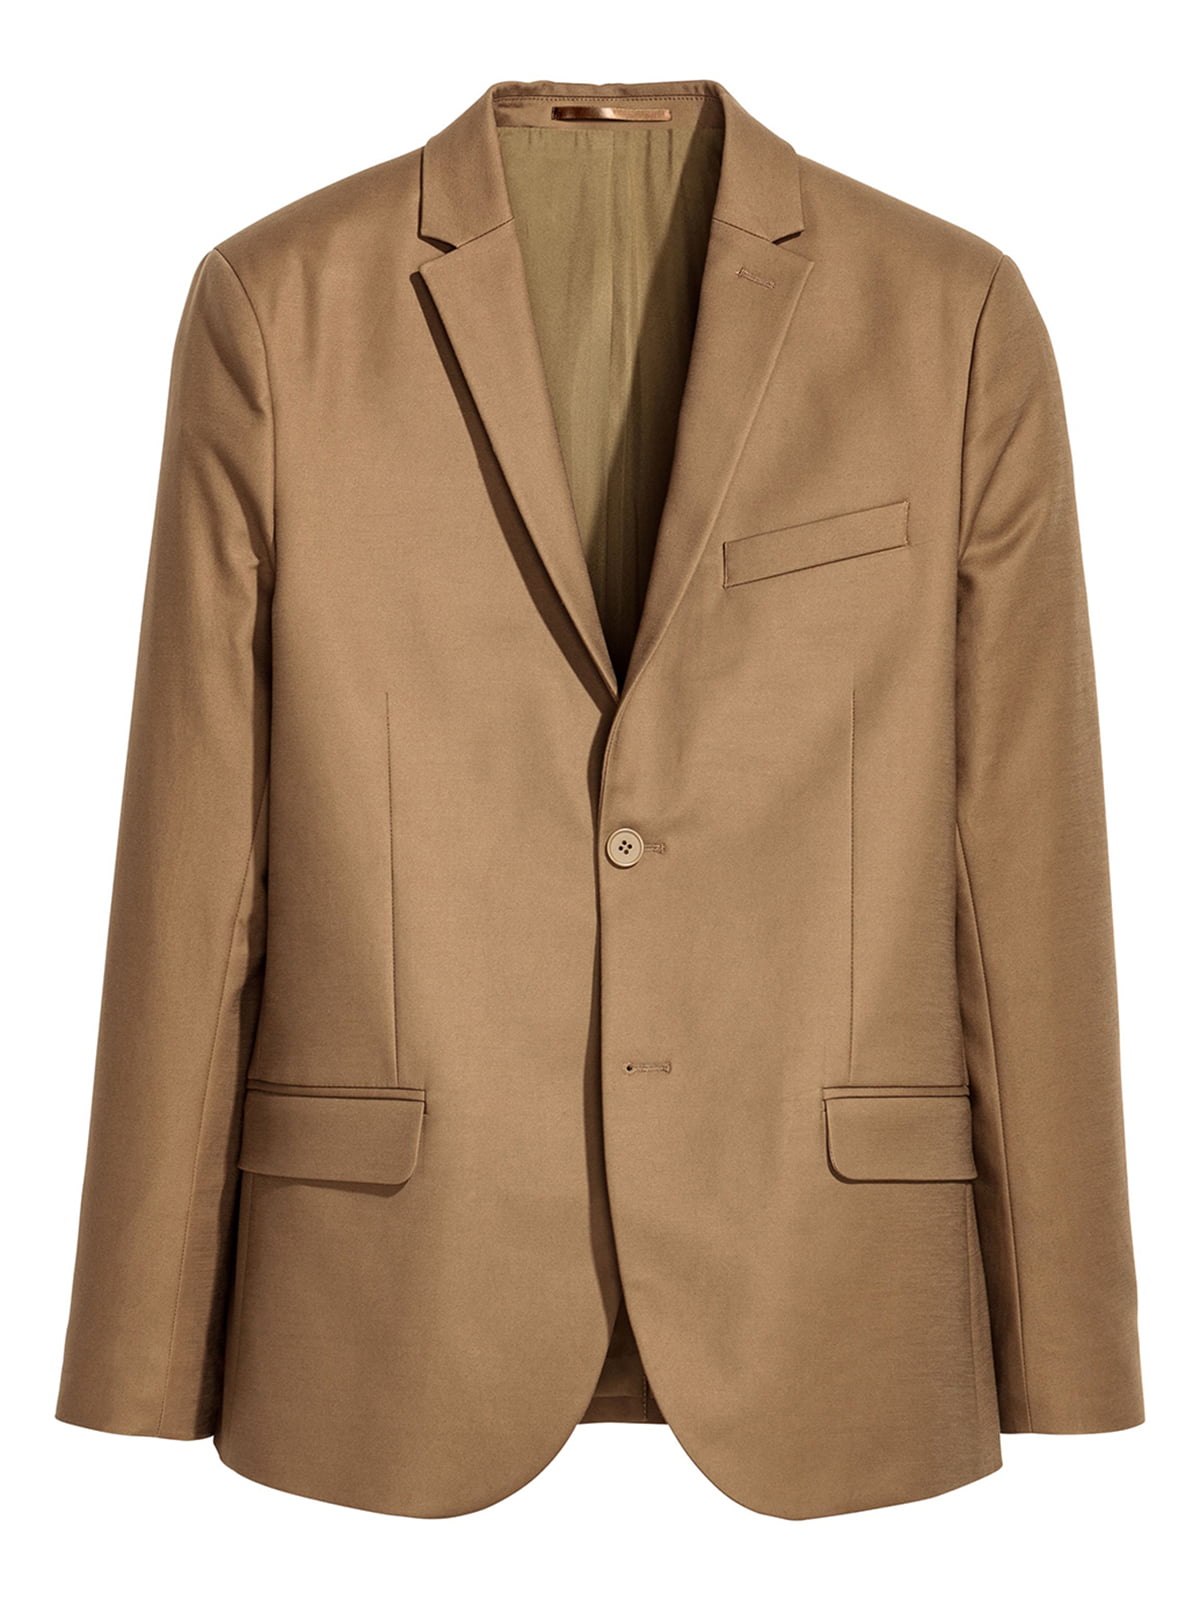 Пиджак коричневого цвета | 5662600